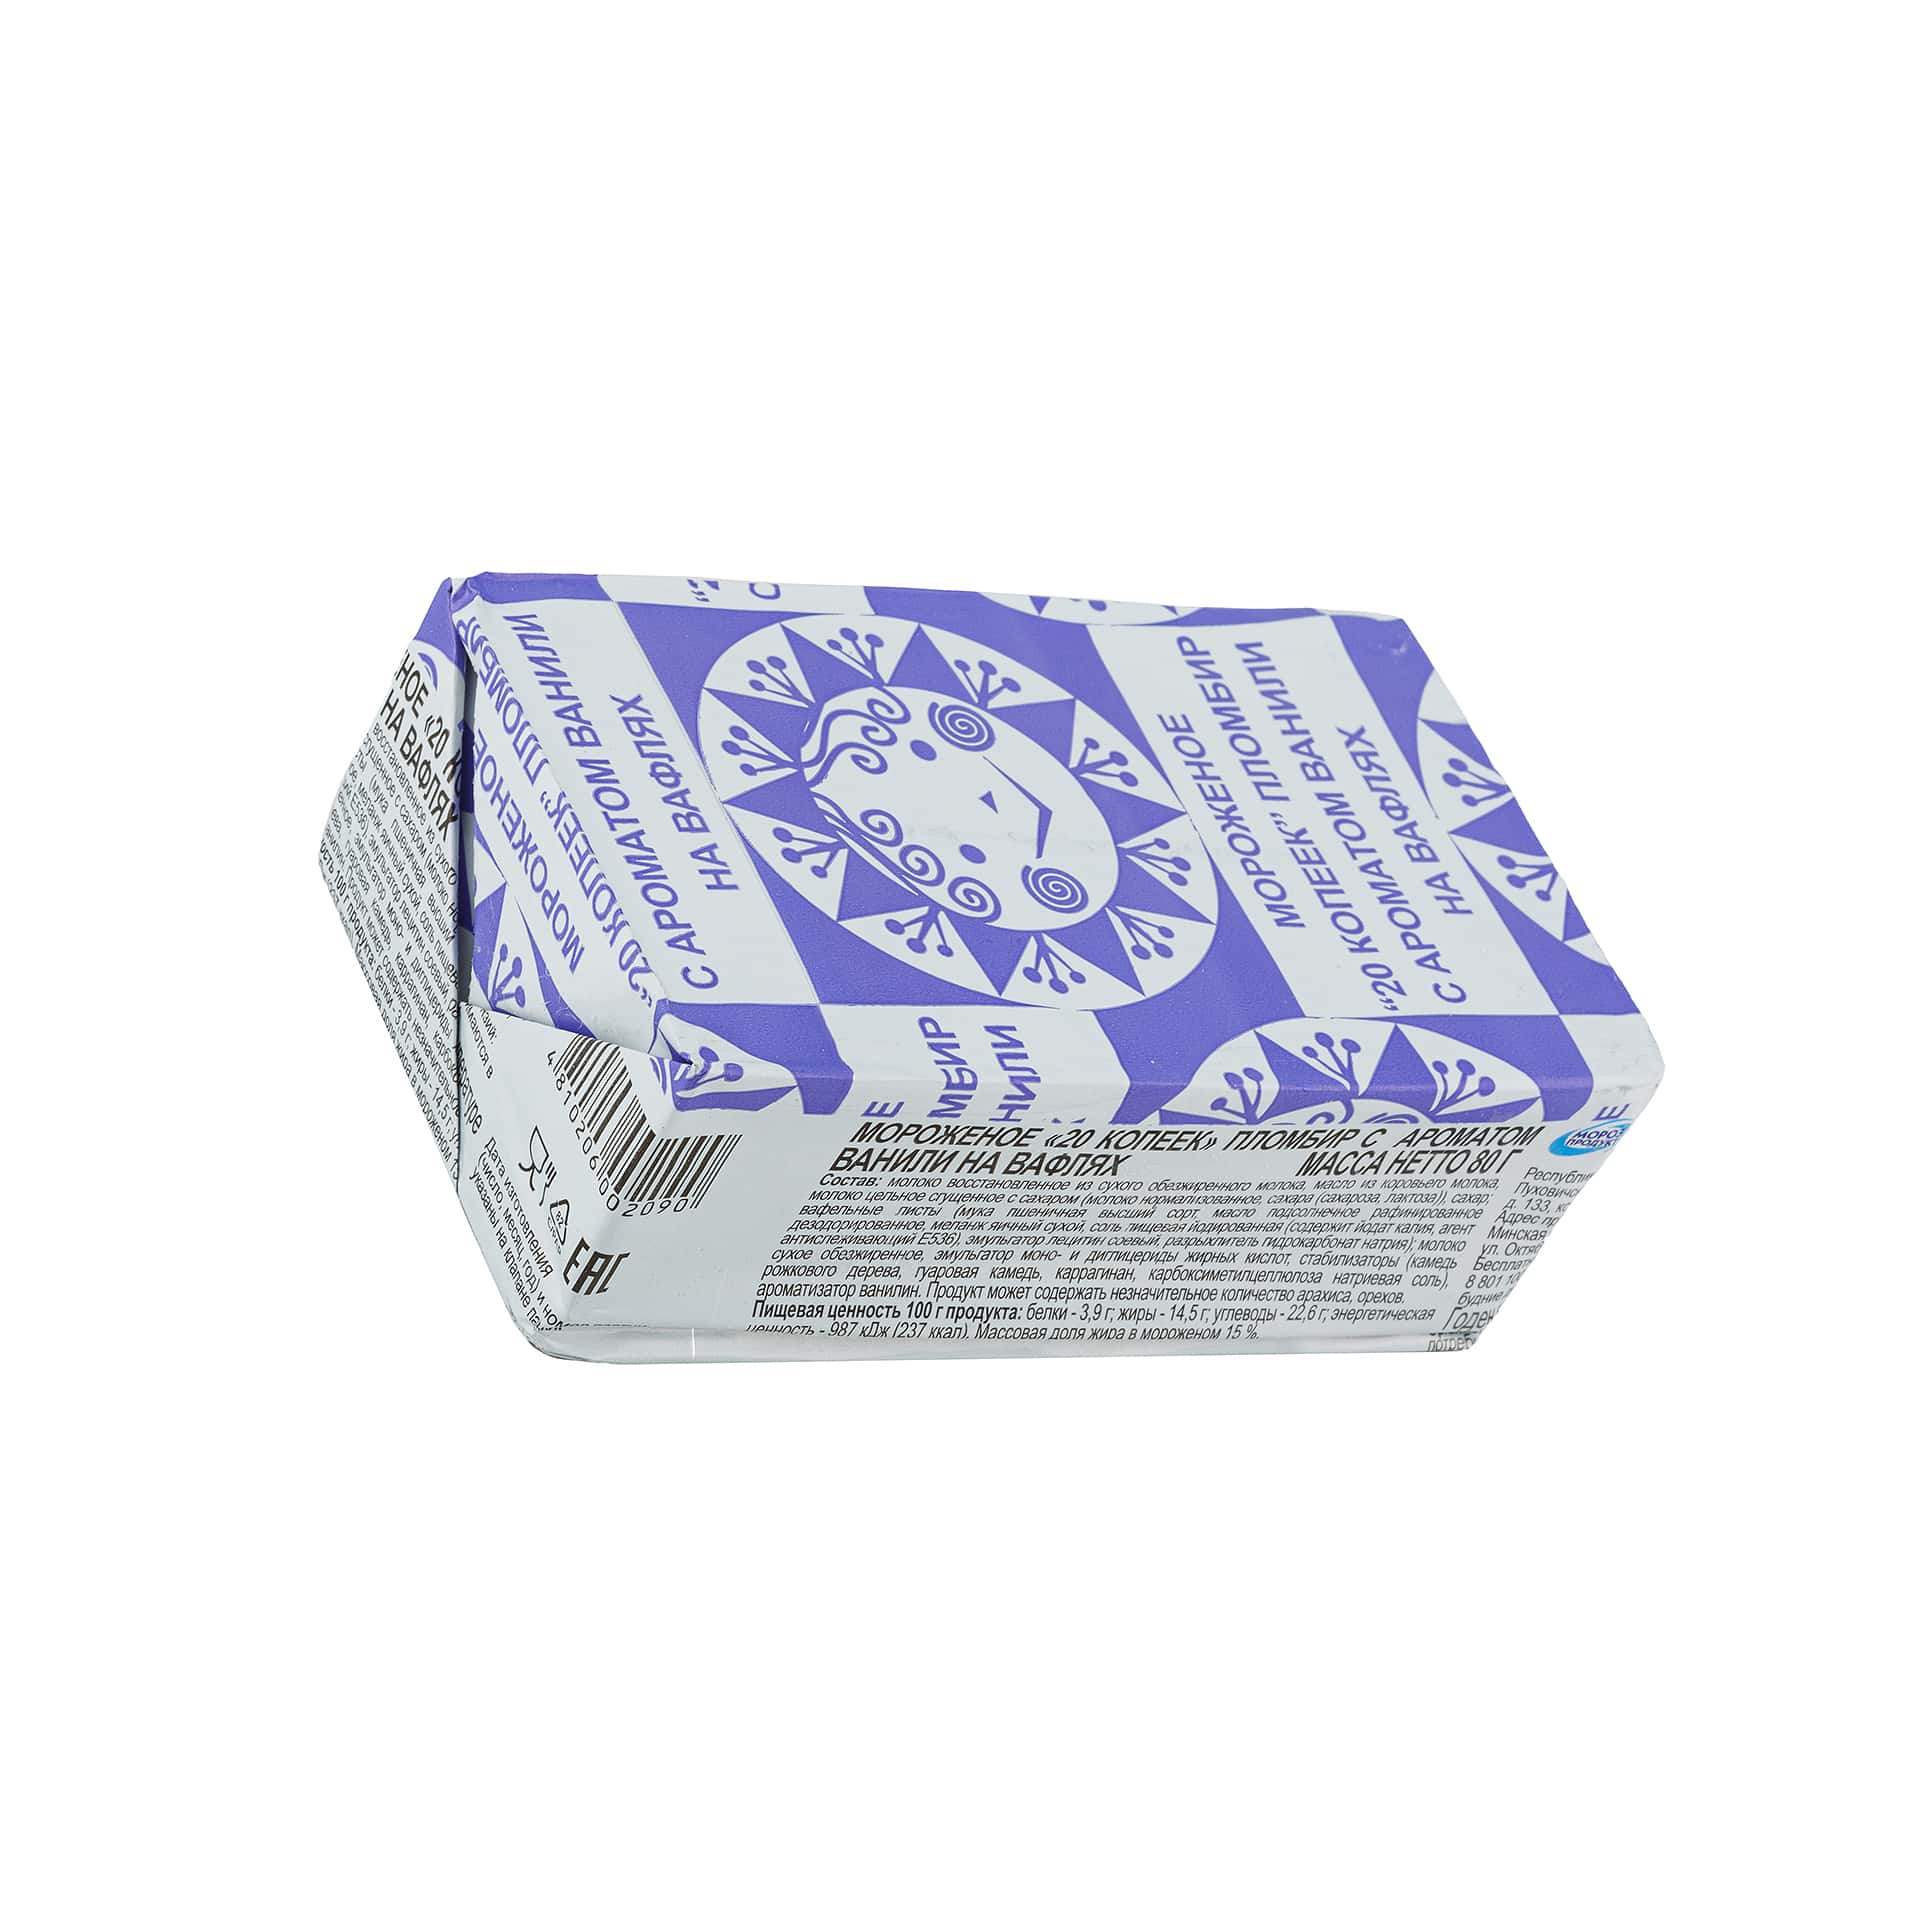 Мороженое пломбир с ароматом ванили брикет в вафлях 20 копеек 80 г 8332LED, общий вид, купить оптом с доставкой по москве и московской области, недорого, низкая цена